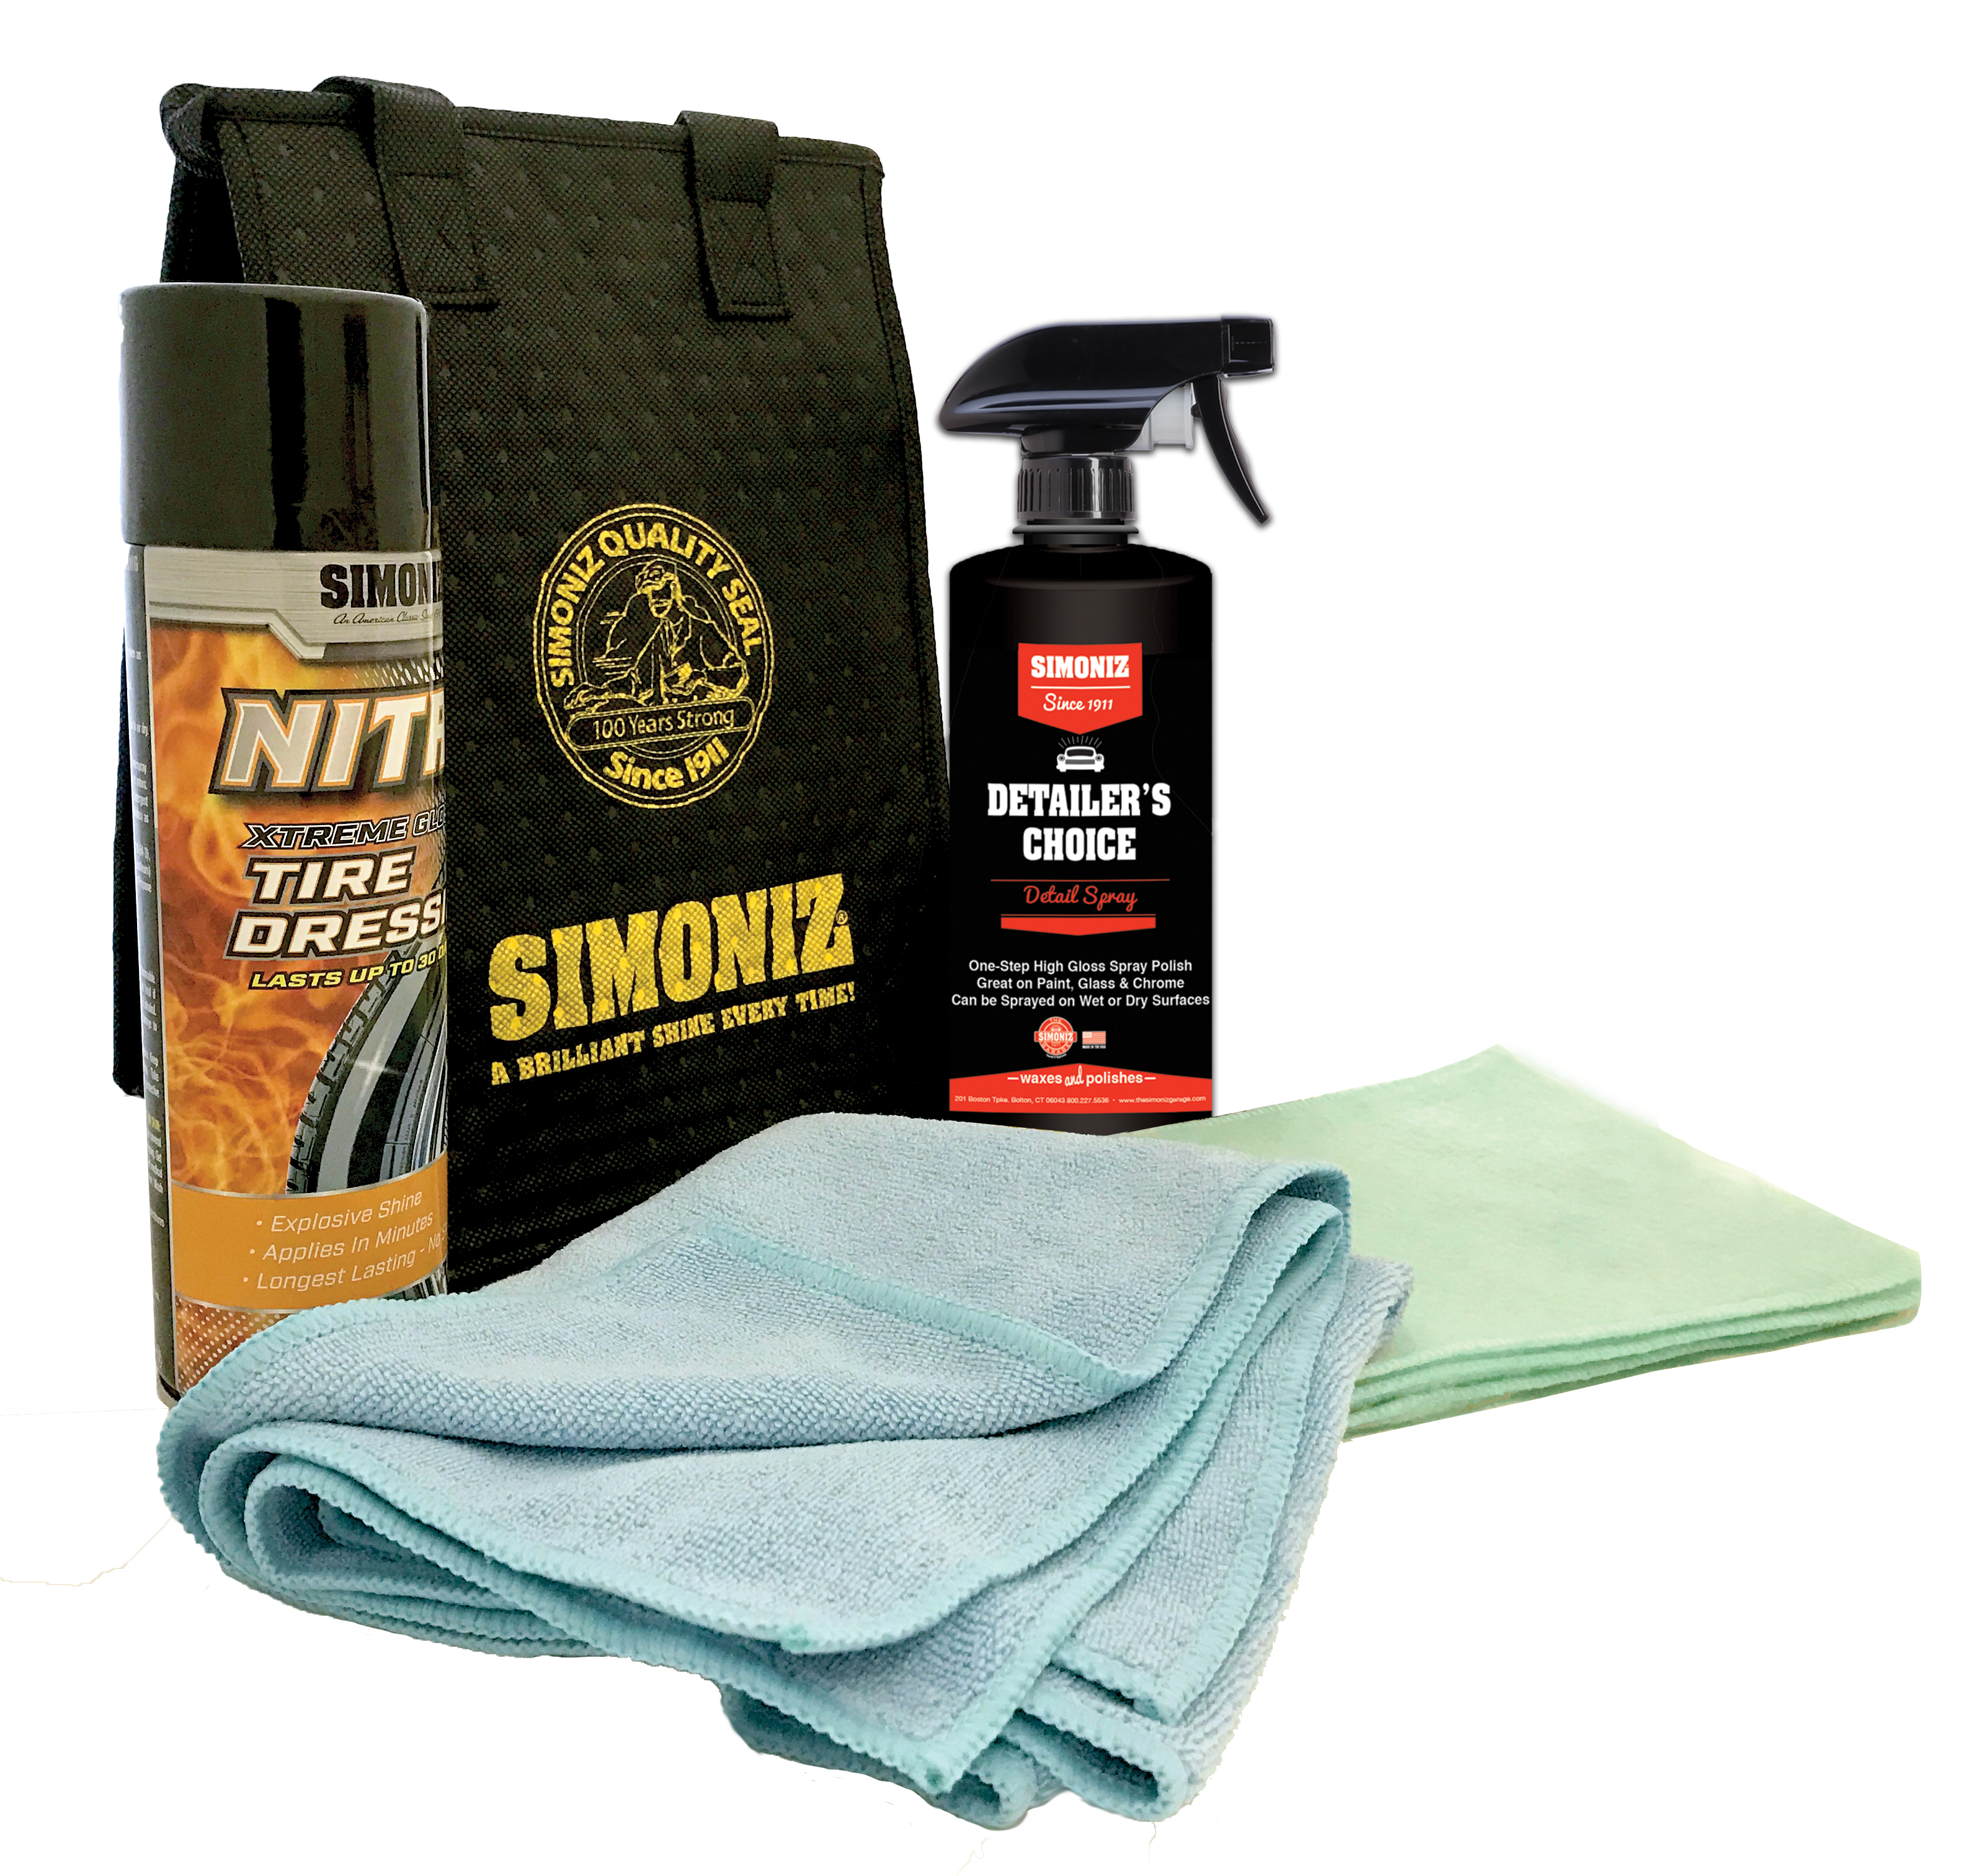 Simoniz SmartWash Waterless Wash & Wax Spray, 32 oz